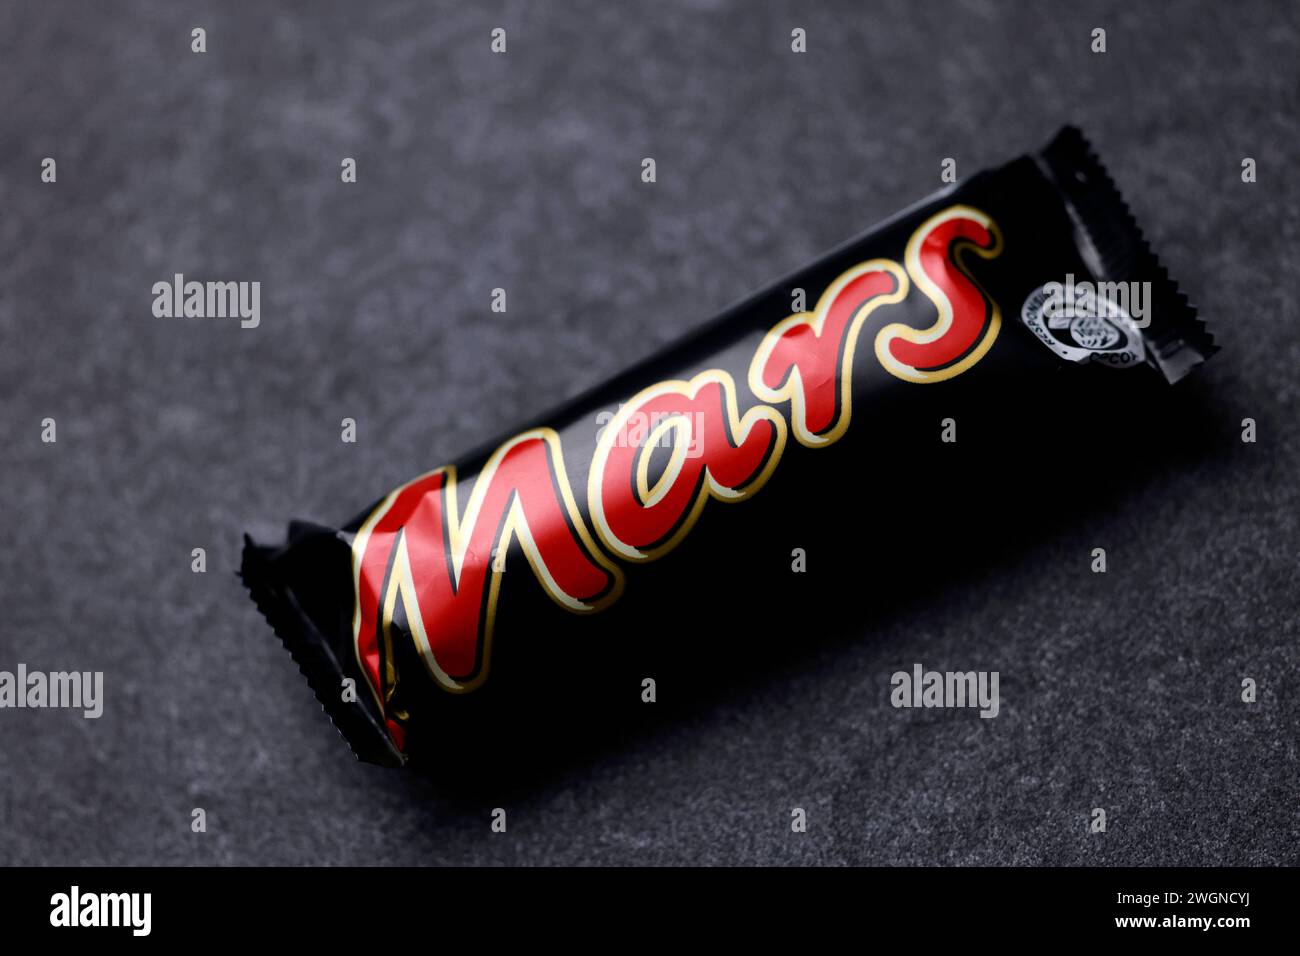 Ein Mars-Schokoriegel liegt auf einer Steinplatte. Mars ist ein von Mars Incorporated hergestellter mit Schokolade überzogener Karamellriegel. Er besteht aus Candycreme mit einer darüber liegenden Schicht Karamell, umgeben von Milchschokolade. Nach einem längeren Streit stehen wohl bald wieder Mars-Produkte in den Regalen der Supermarktkette Edeka. Themenbild, Symbolbild Köln, 06.02.2024 NRW Deutschland *** A Mars chocolate bar lies on a stone slab Mars is a chocolate-coated caramel bar produced by Mars Incorporated It consists of candy cream with a layer of caramel on top, surrounded by milk Stock Photo